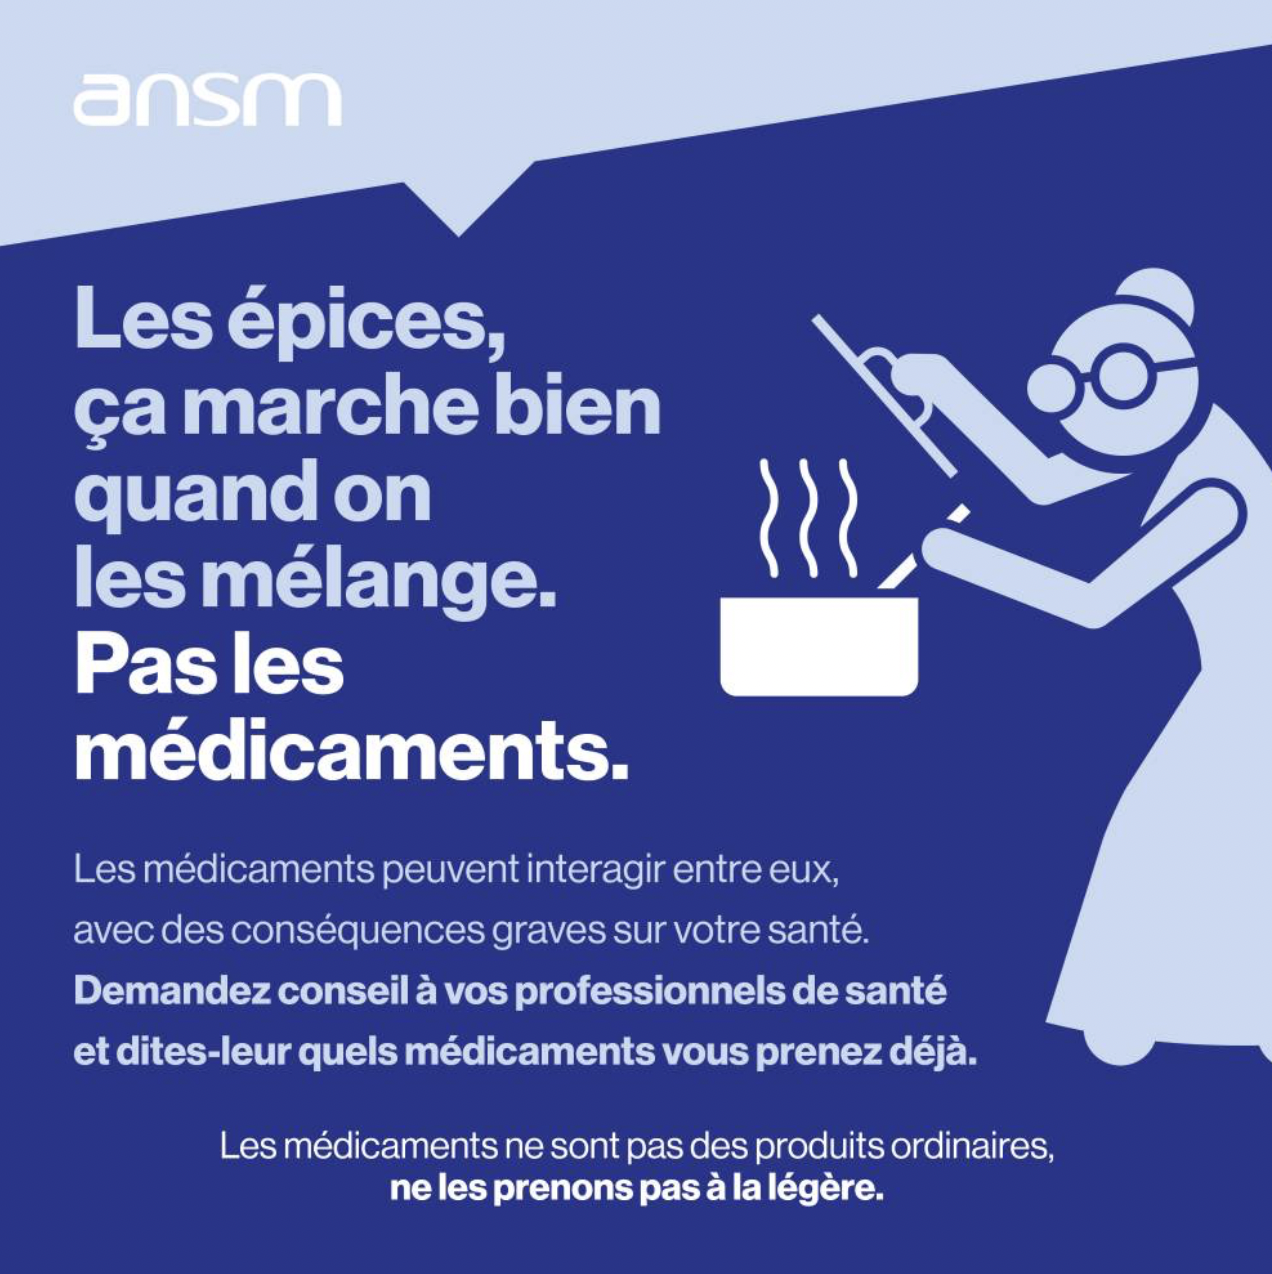 Médicaments : nouvelle campagne de l'ANSM pour le bon usage